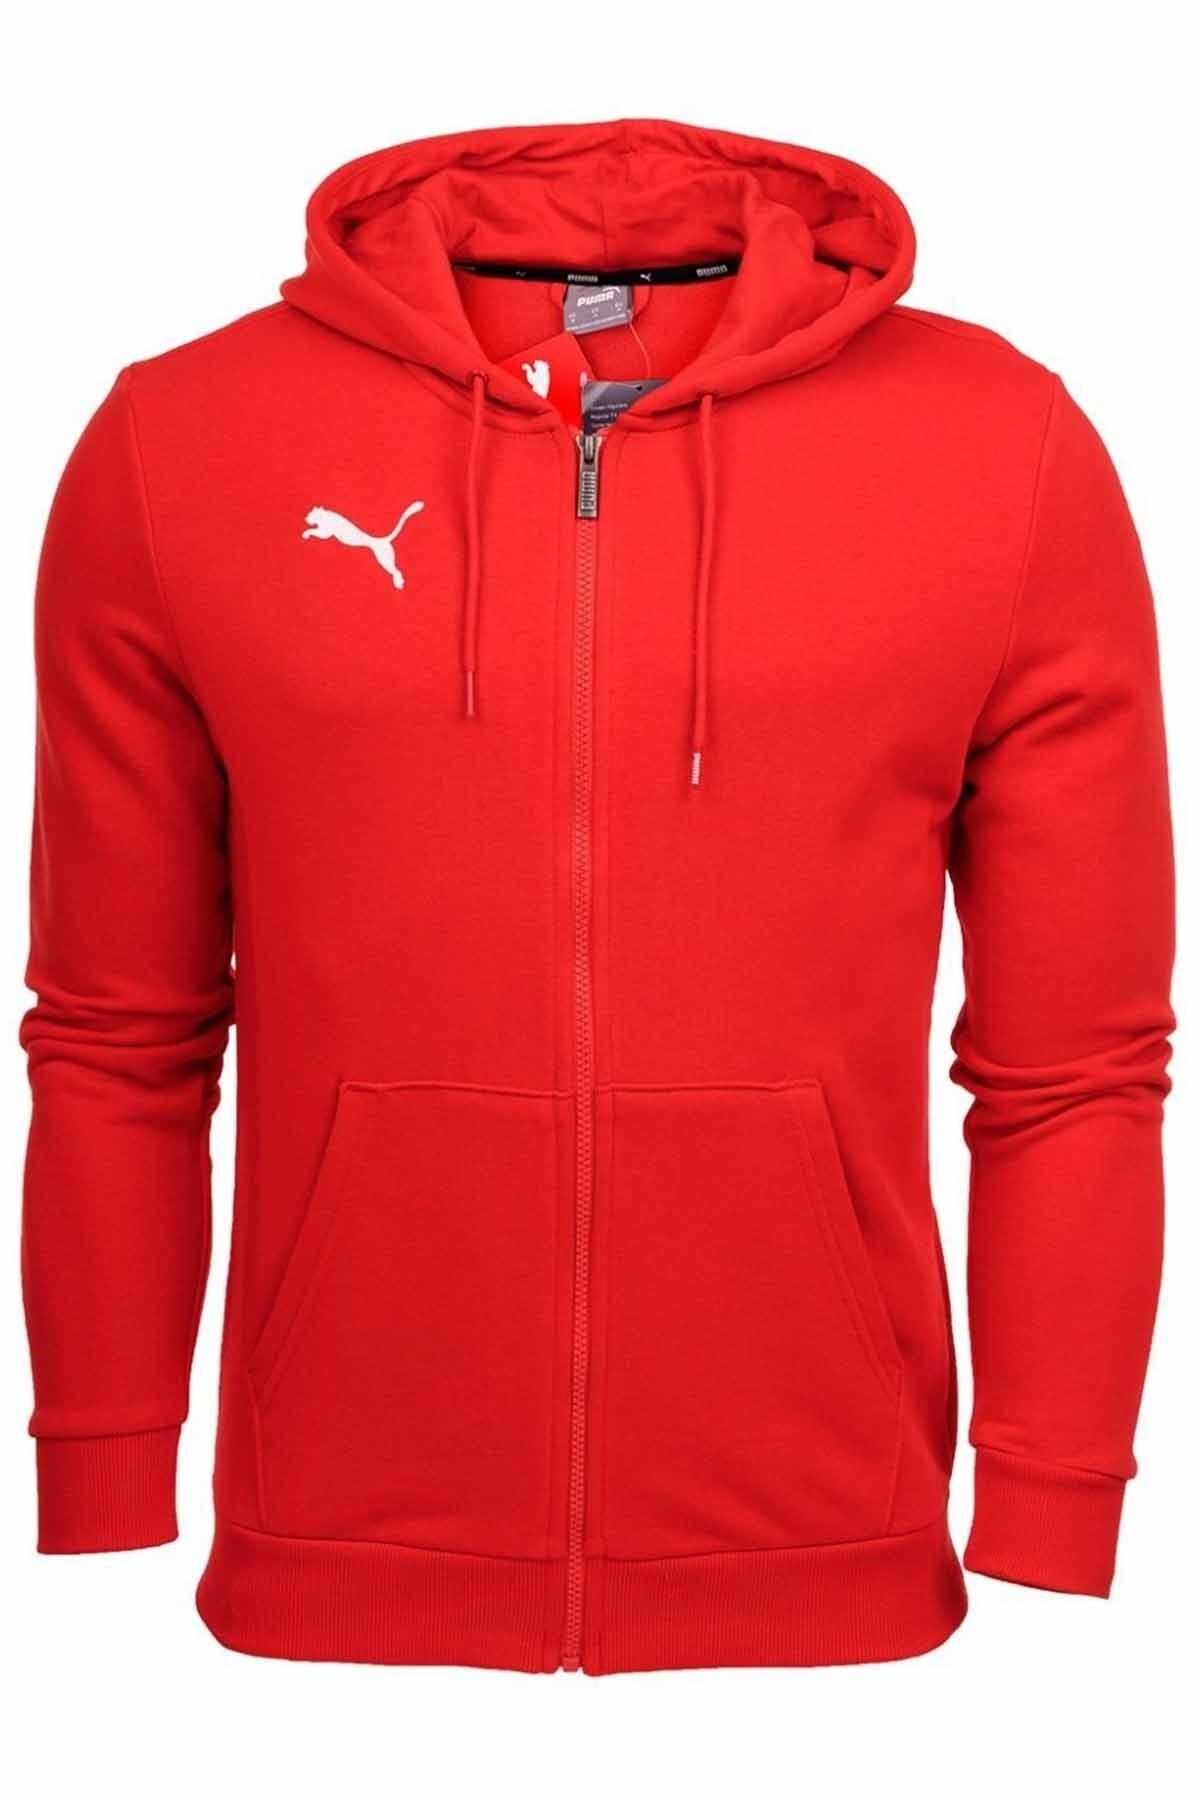 Puma Casuals Jacket Erkek Sweatshirt 656708-01 Kırmızı